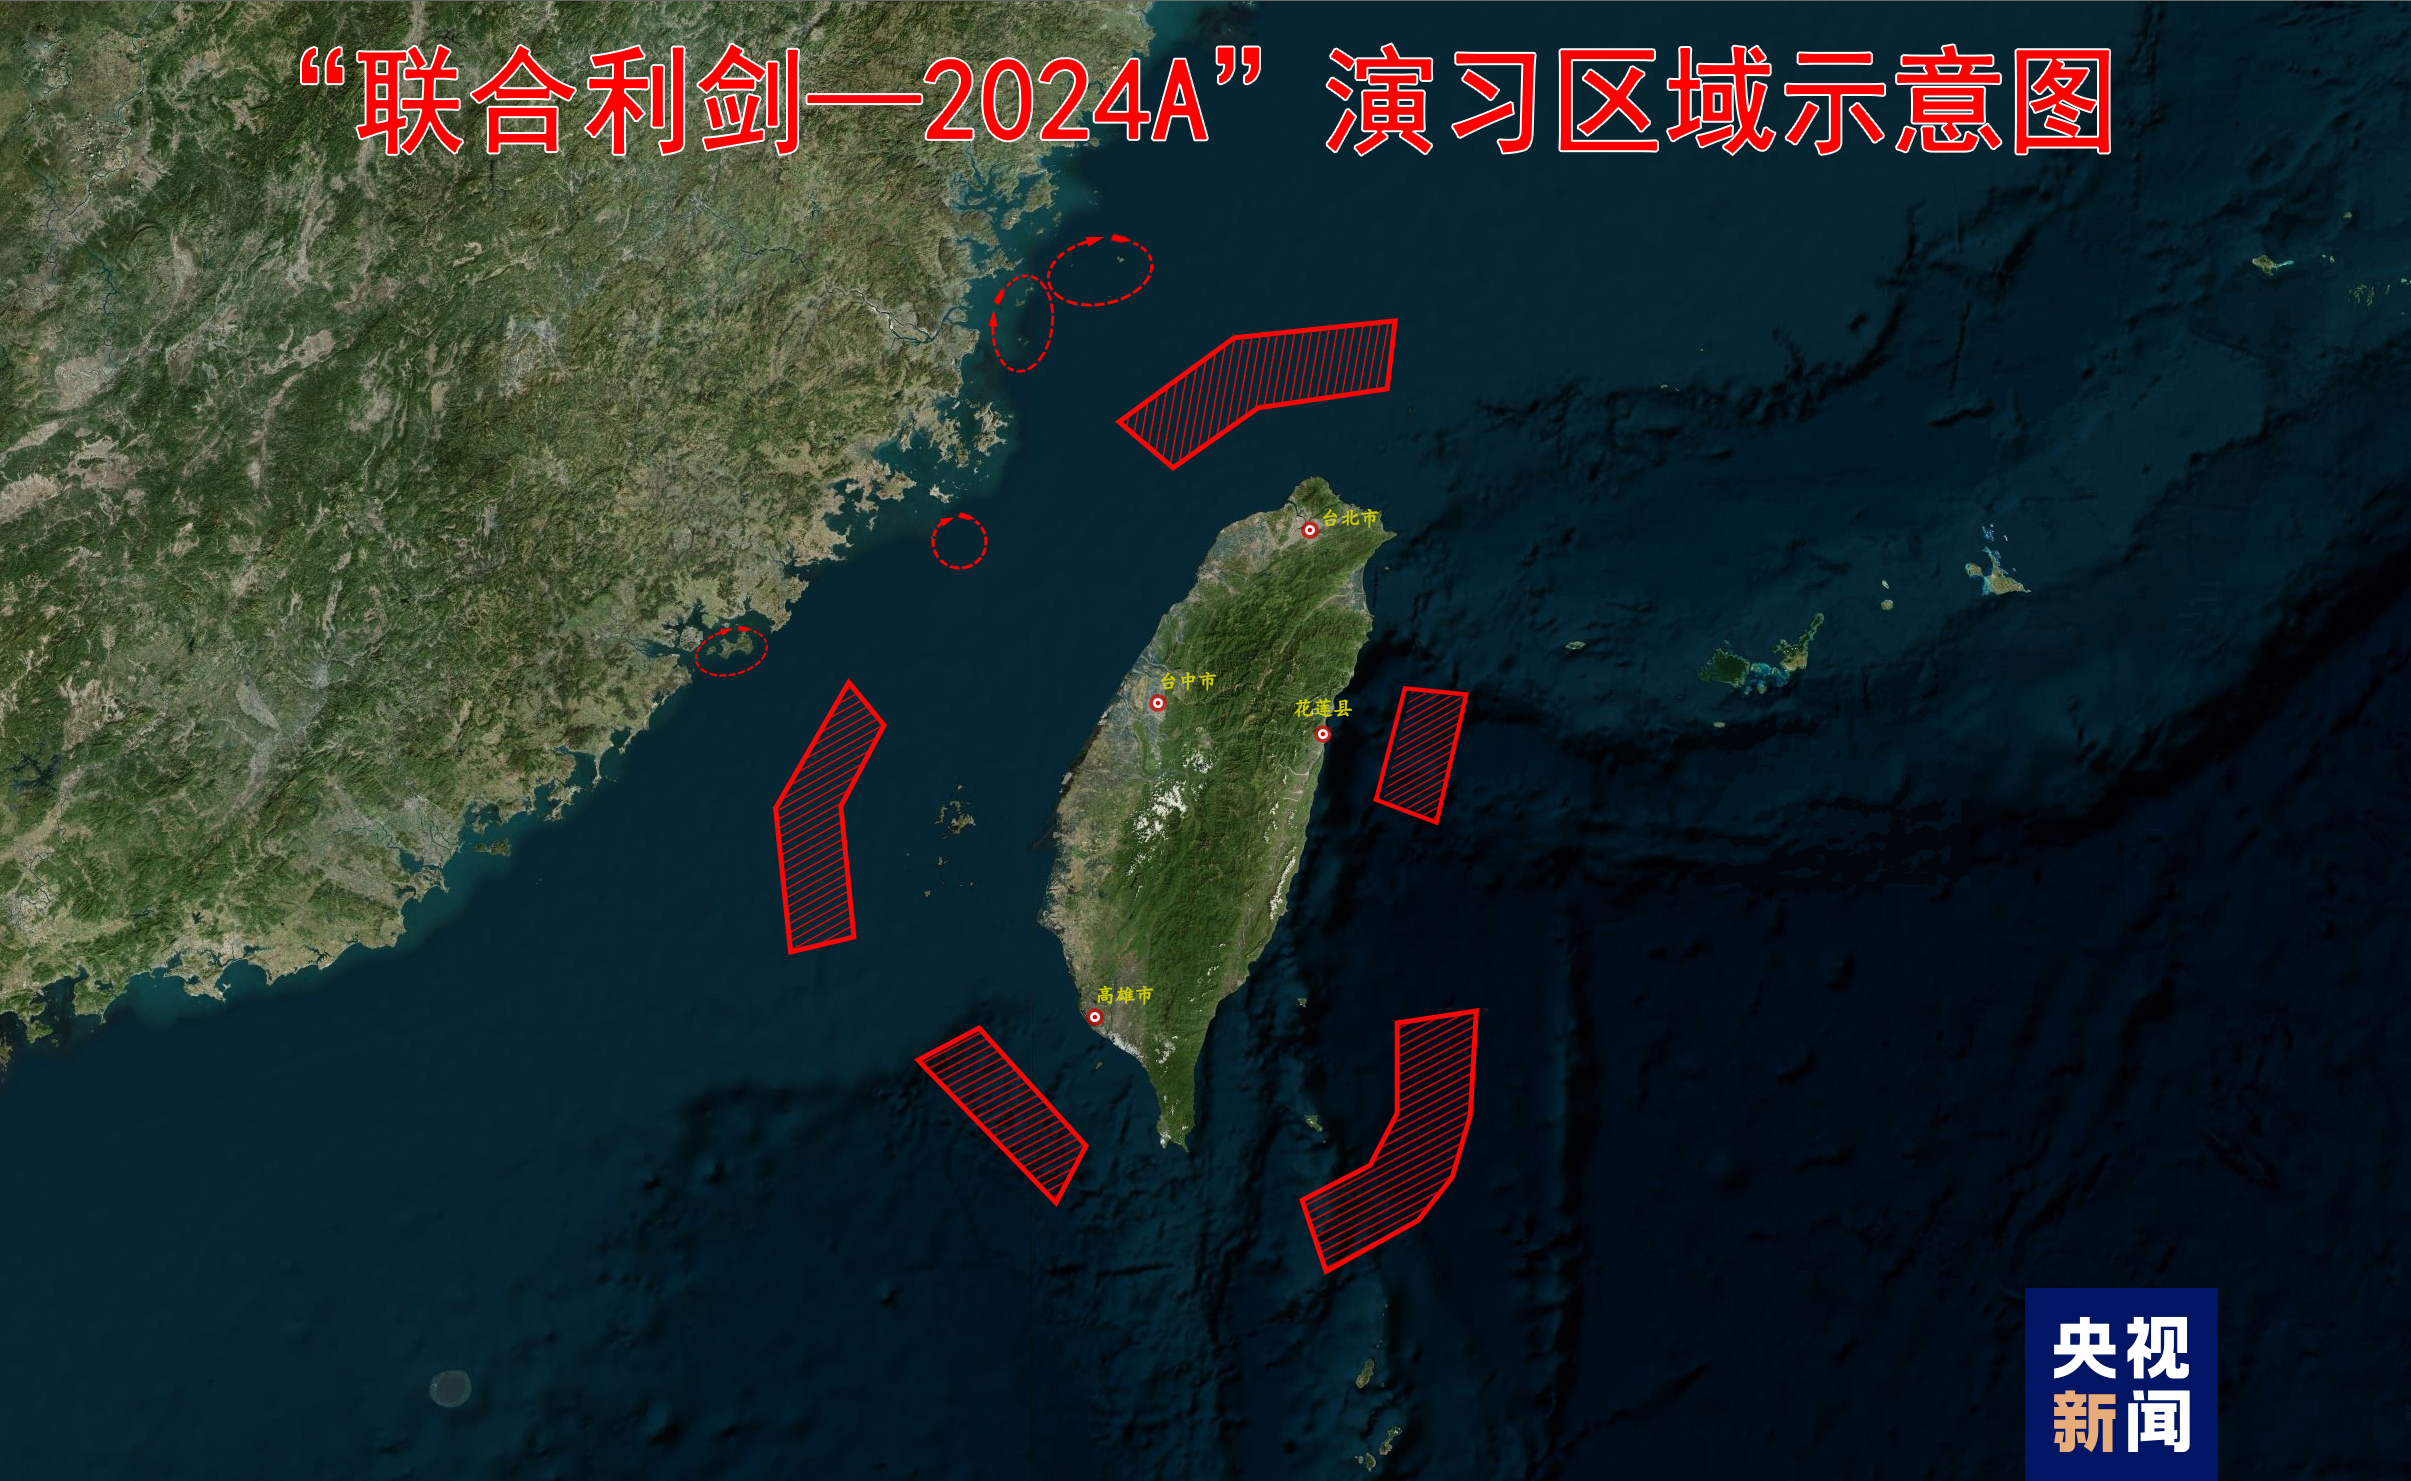 东部战区位台岛周边开展“联合利剑－2024A”演习